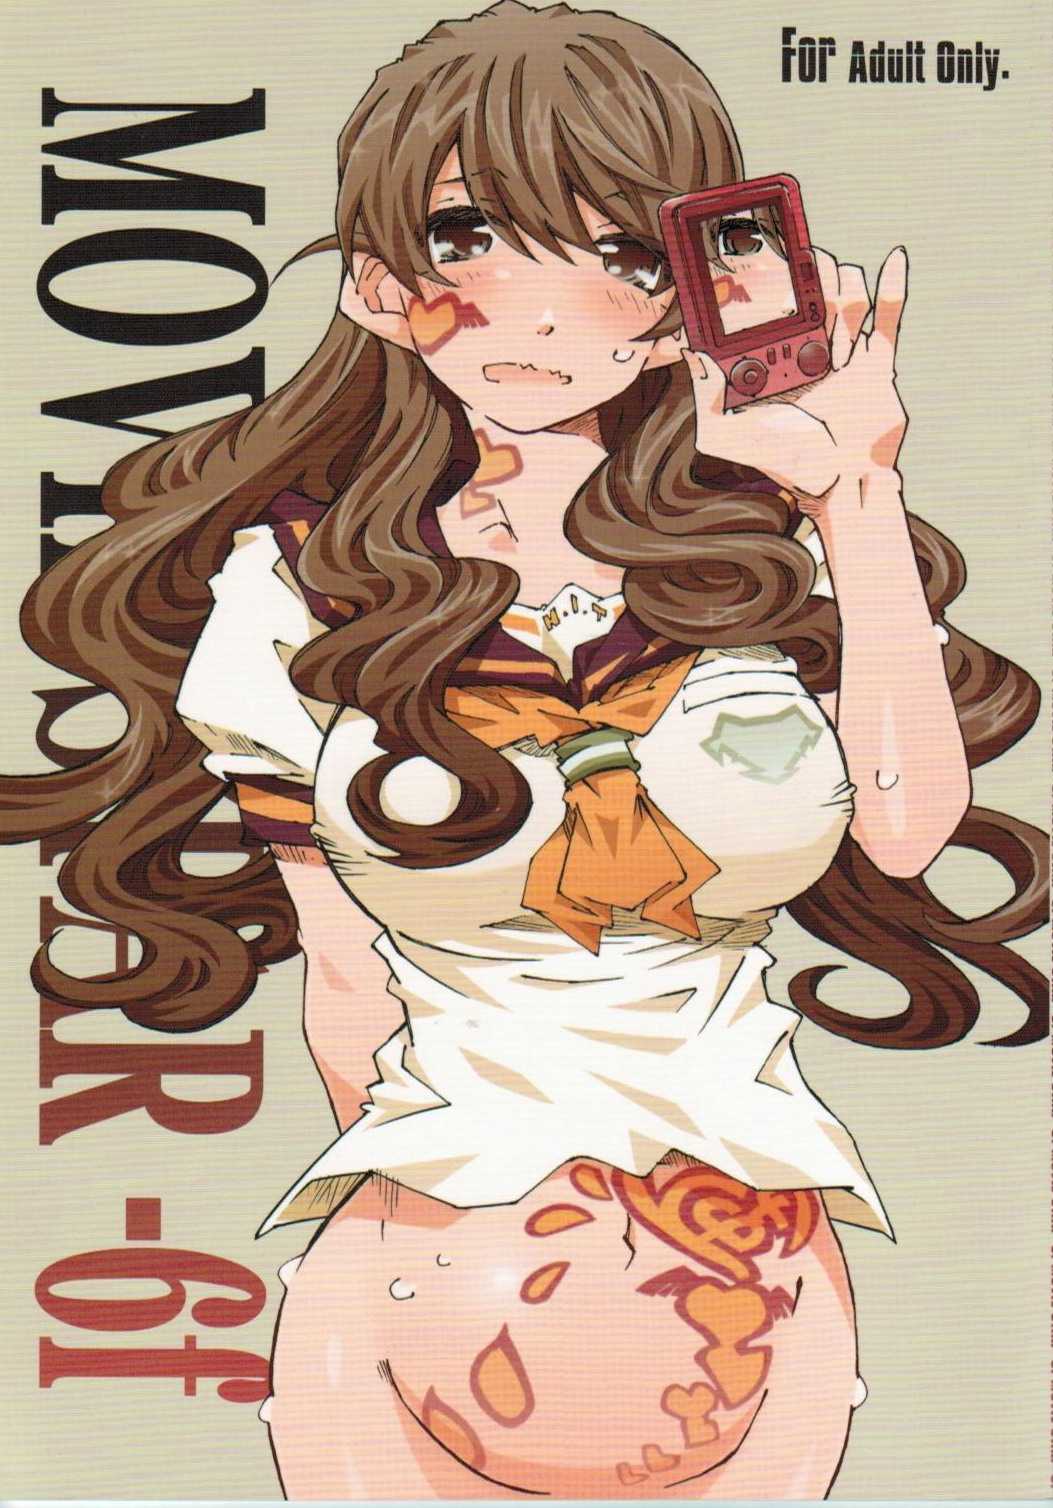 (C80) [RPG COMPANY2 (Toumi Haruka)] movie star -6f (Oh my goddess!) (C80) [RPGカンパニー2 (遠海はるか)] movie star -6f (ああっ女神さまっ)